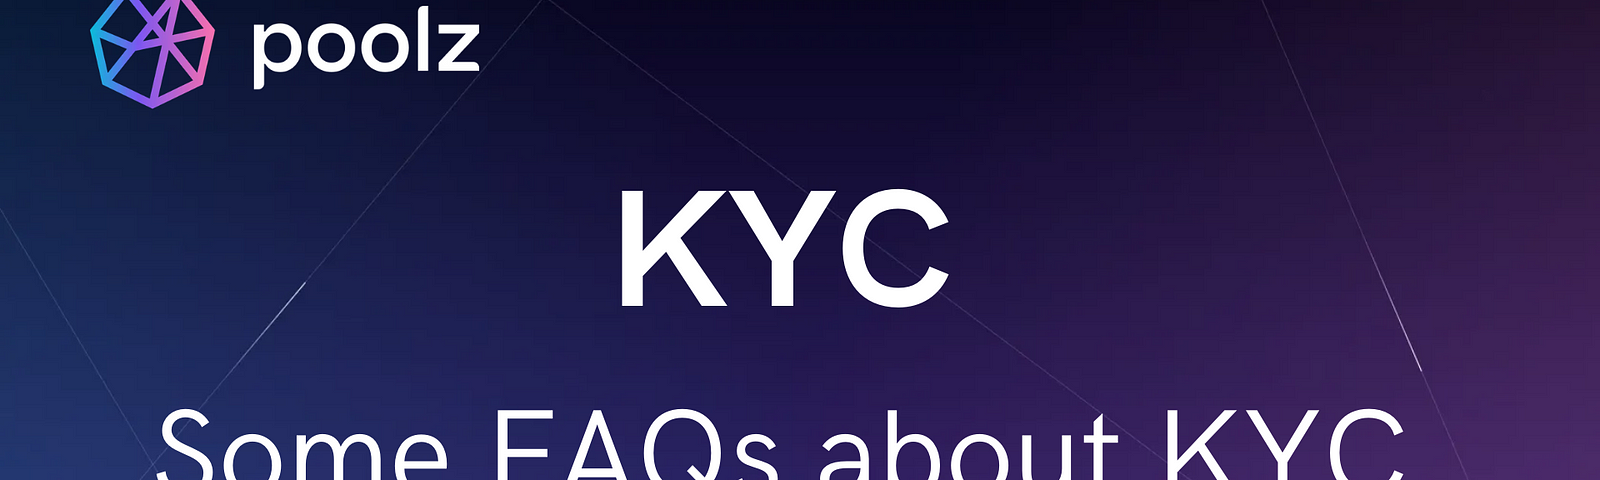 Poolz KYC FAQs